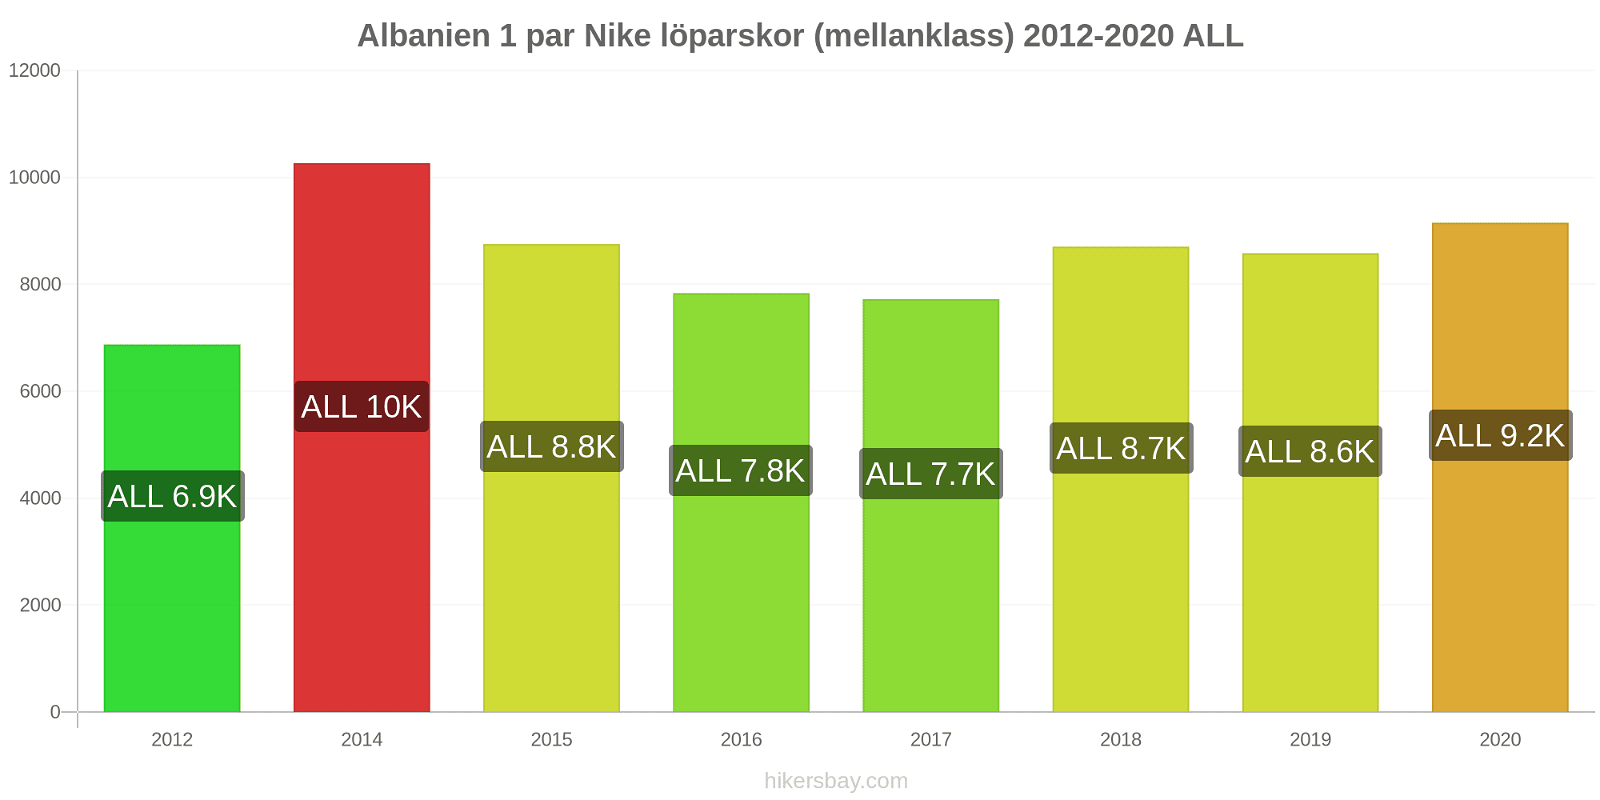 Albanien prisförändringar 1 par Nike löparskor (mellanklass) hikersbay.com